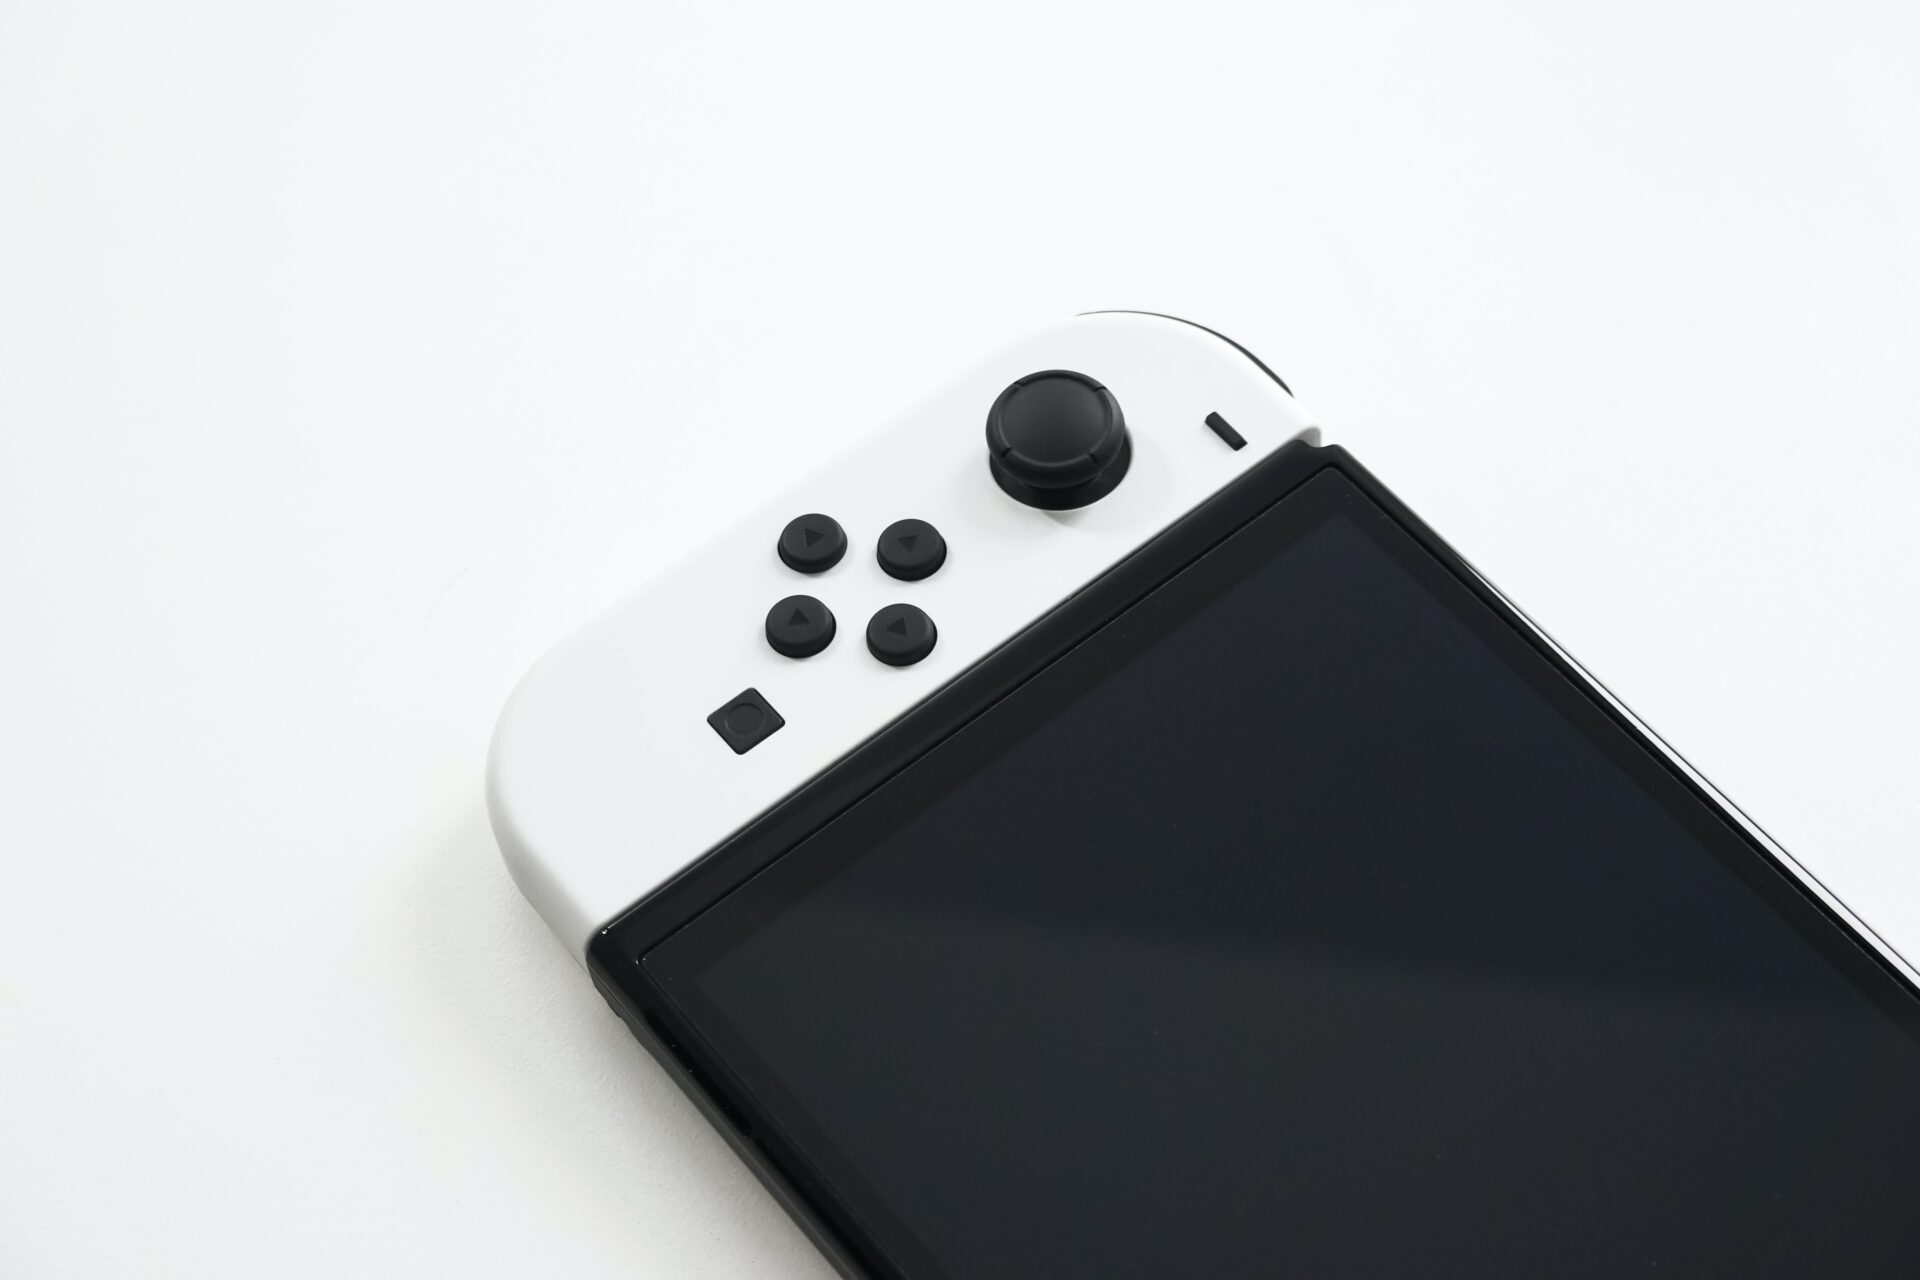 Soldes : équipez votre Nintendo Switch pour pas cher 